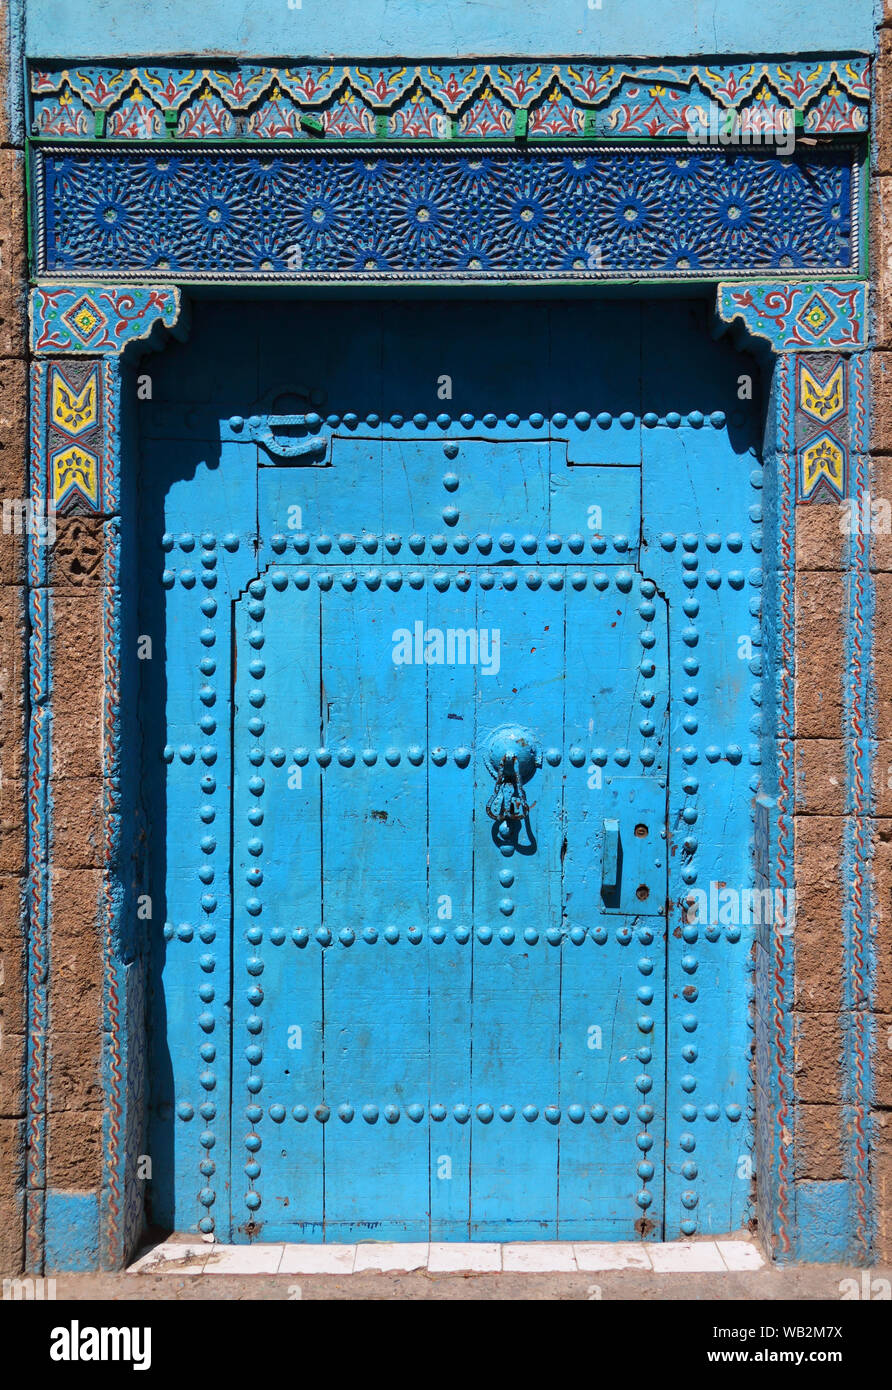 Médiéval, typique de style arabesque, bleu, finement sculptés, porte cloutée riad marocain et porte cadre, Azemmour, El Jadida, Maroc. Banque D'Images